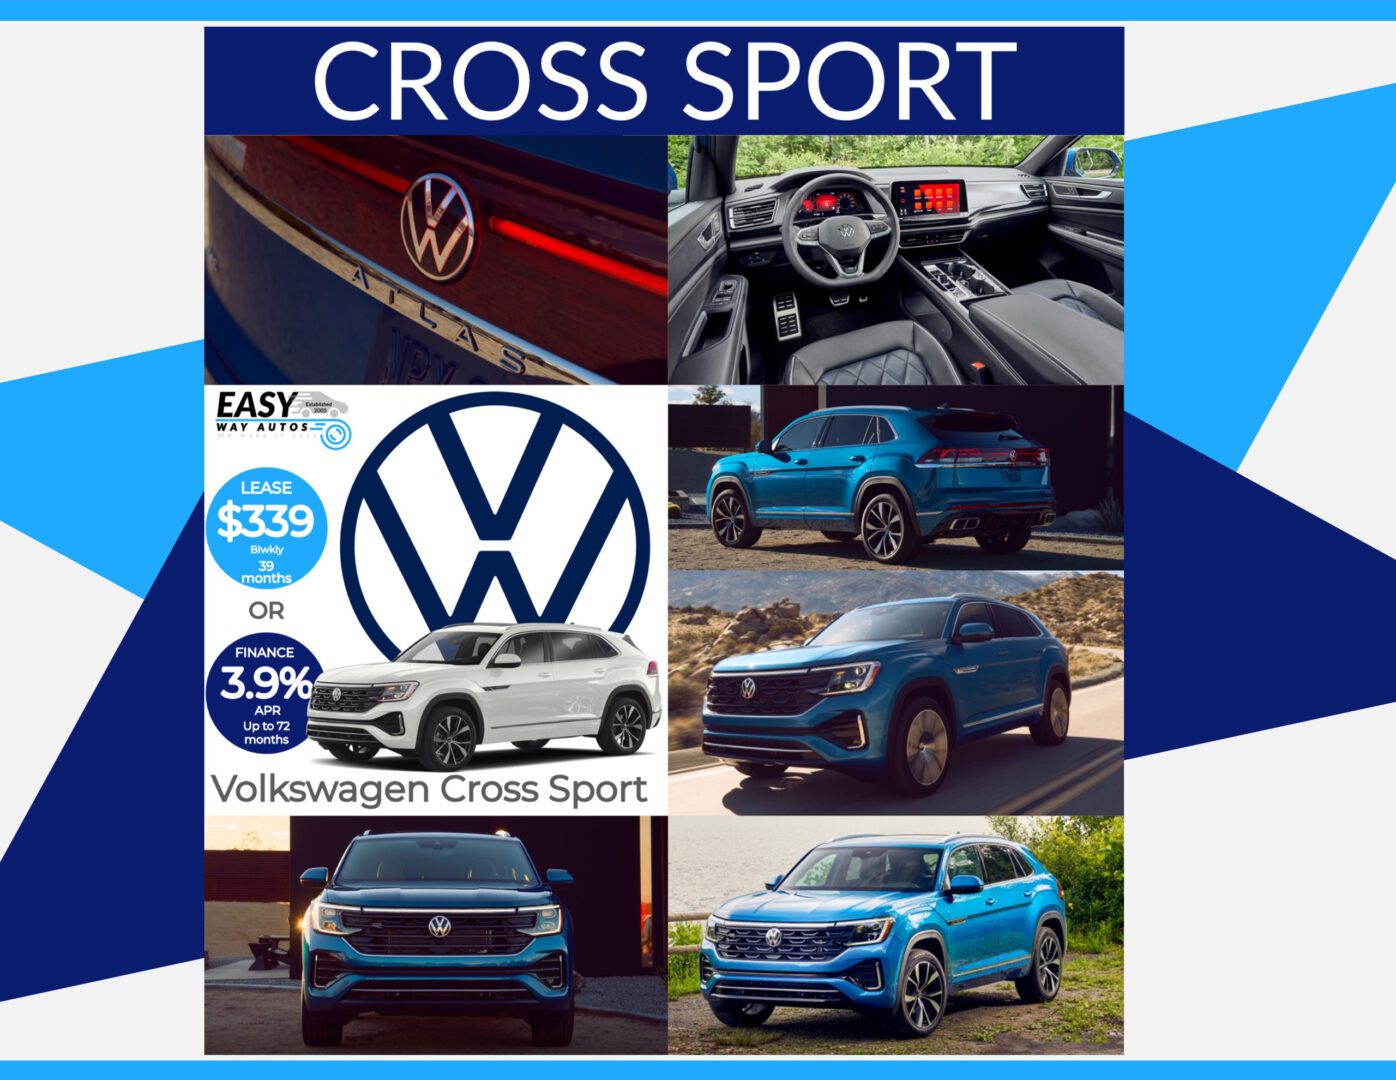 Volkswagen cross sport 2019.